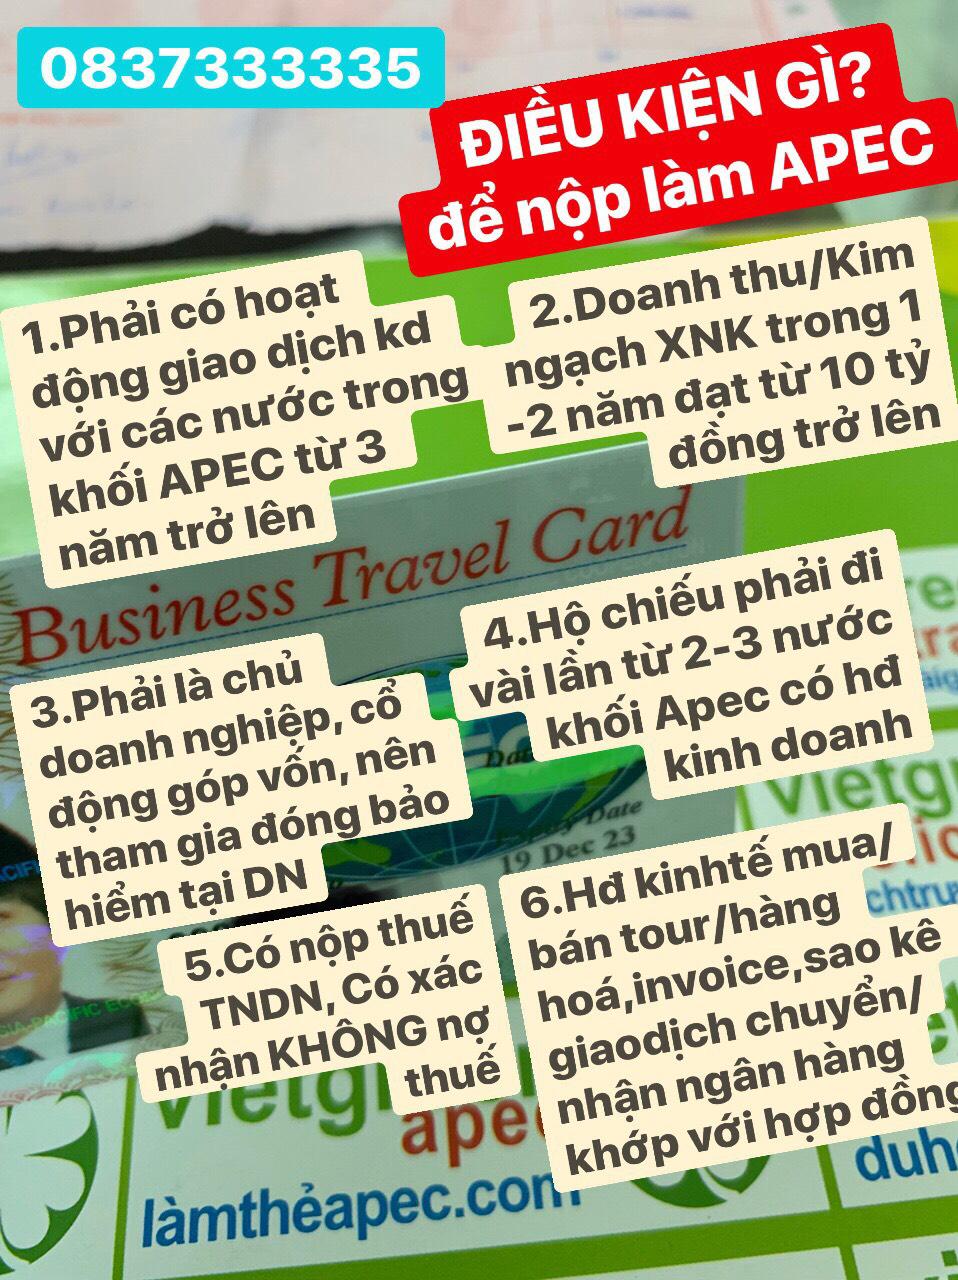 Dịch Vụ Xin Cấp Thẻ Apec Cho Khác Vip | Viet Green Apec